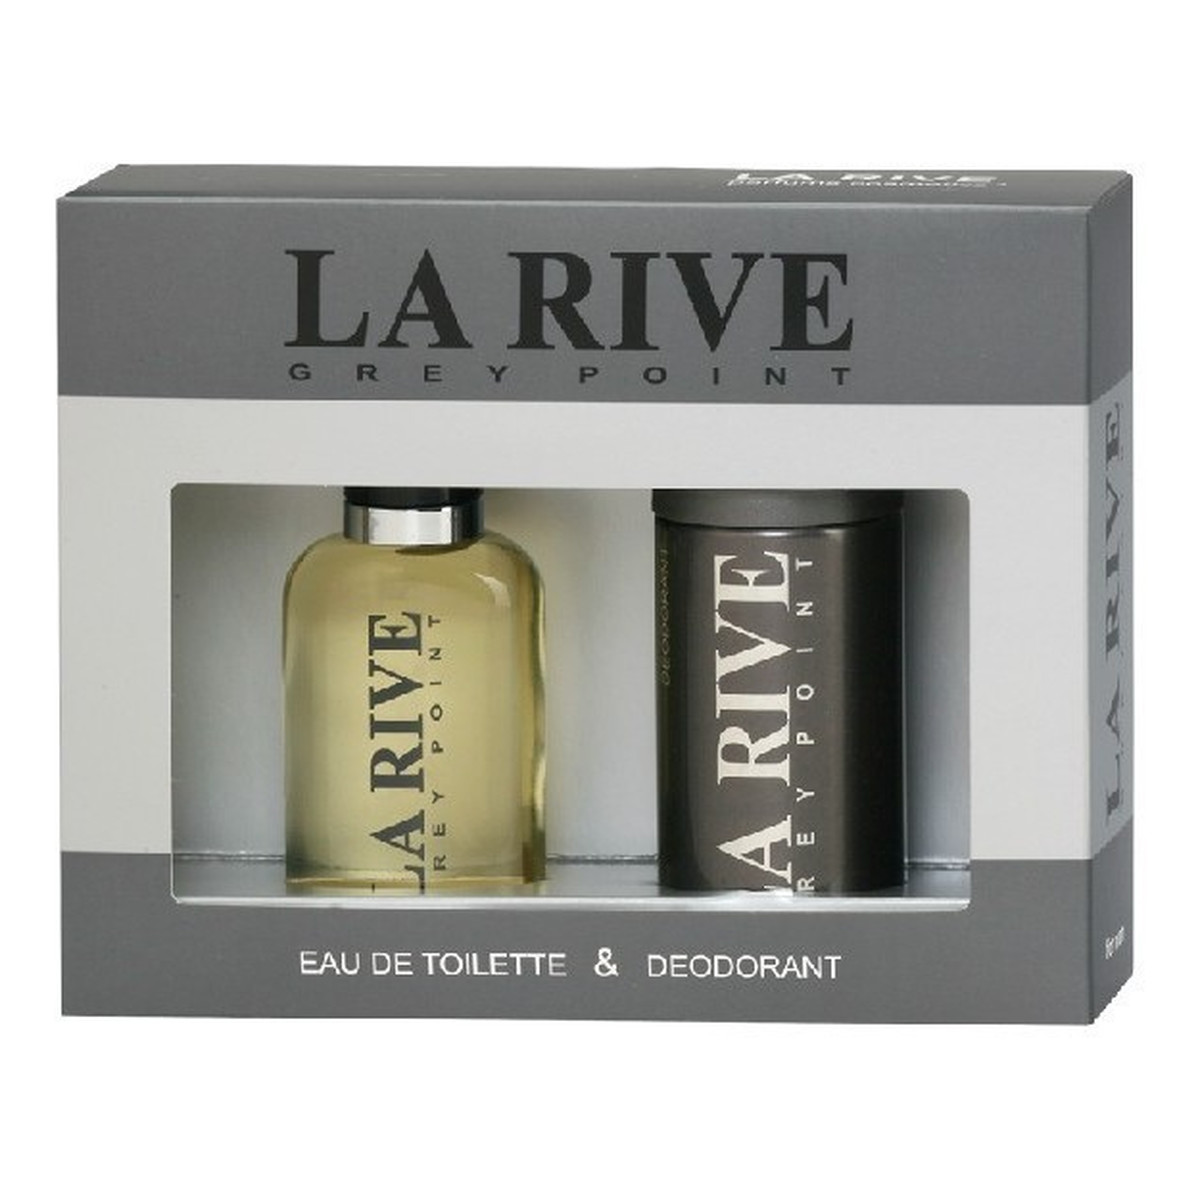 La Rive for Men Grey Point Zestaw prezentowy (woda toaletowa 100ml+dezodorant 150ml)